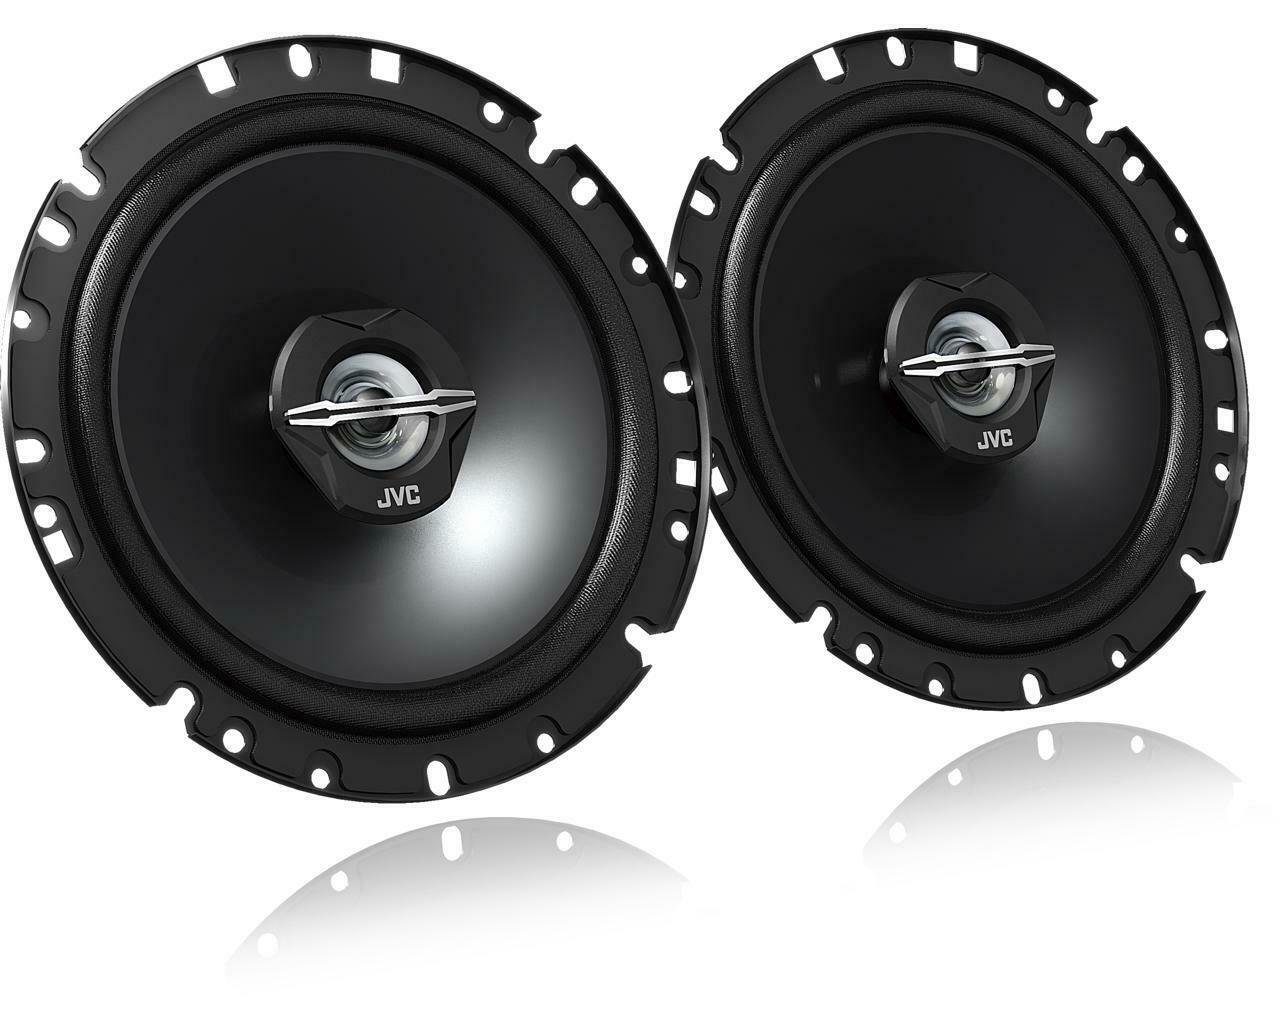 Lauts DYB Ford DSX für Focus Bj Auto-Lautsprecher 12/10-20 passend (30 W) JVC